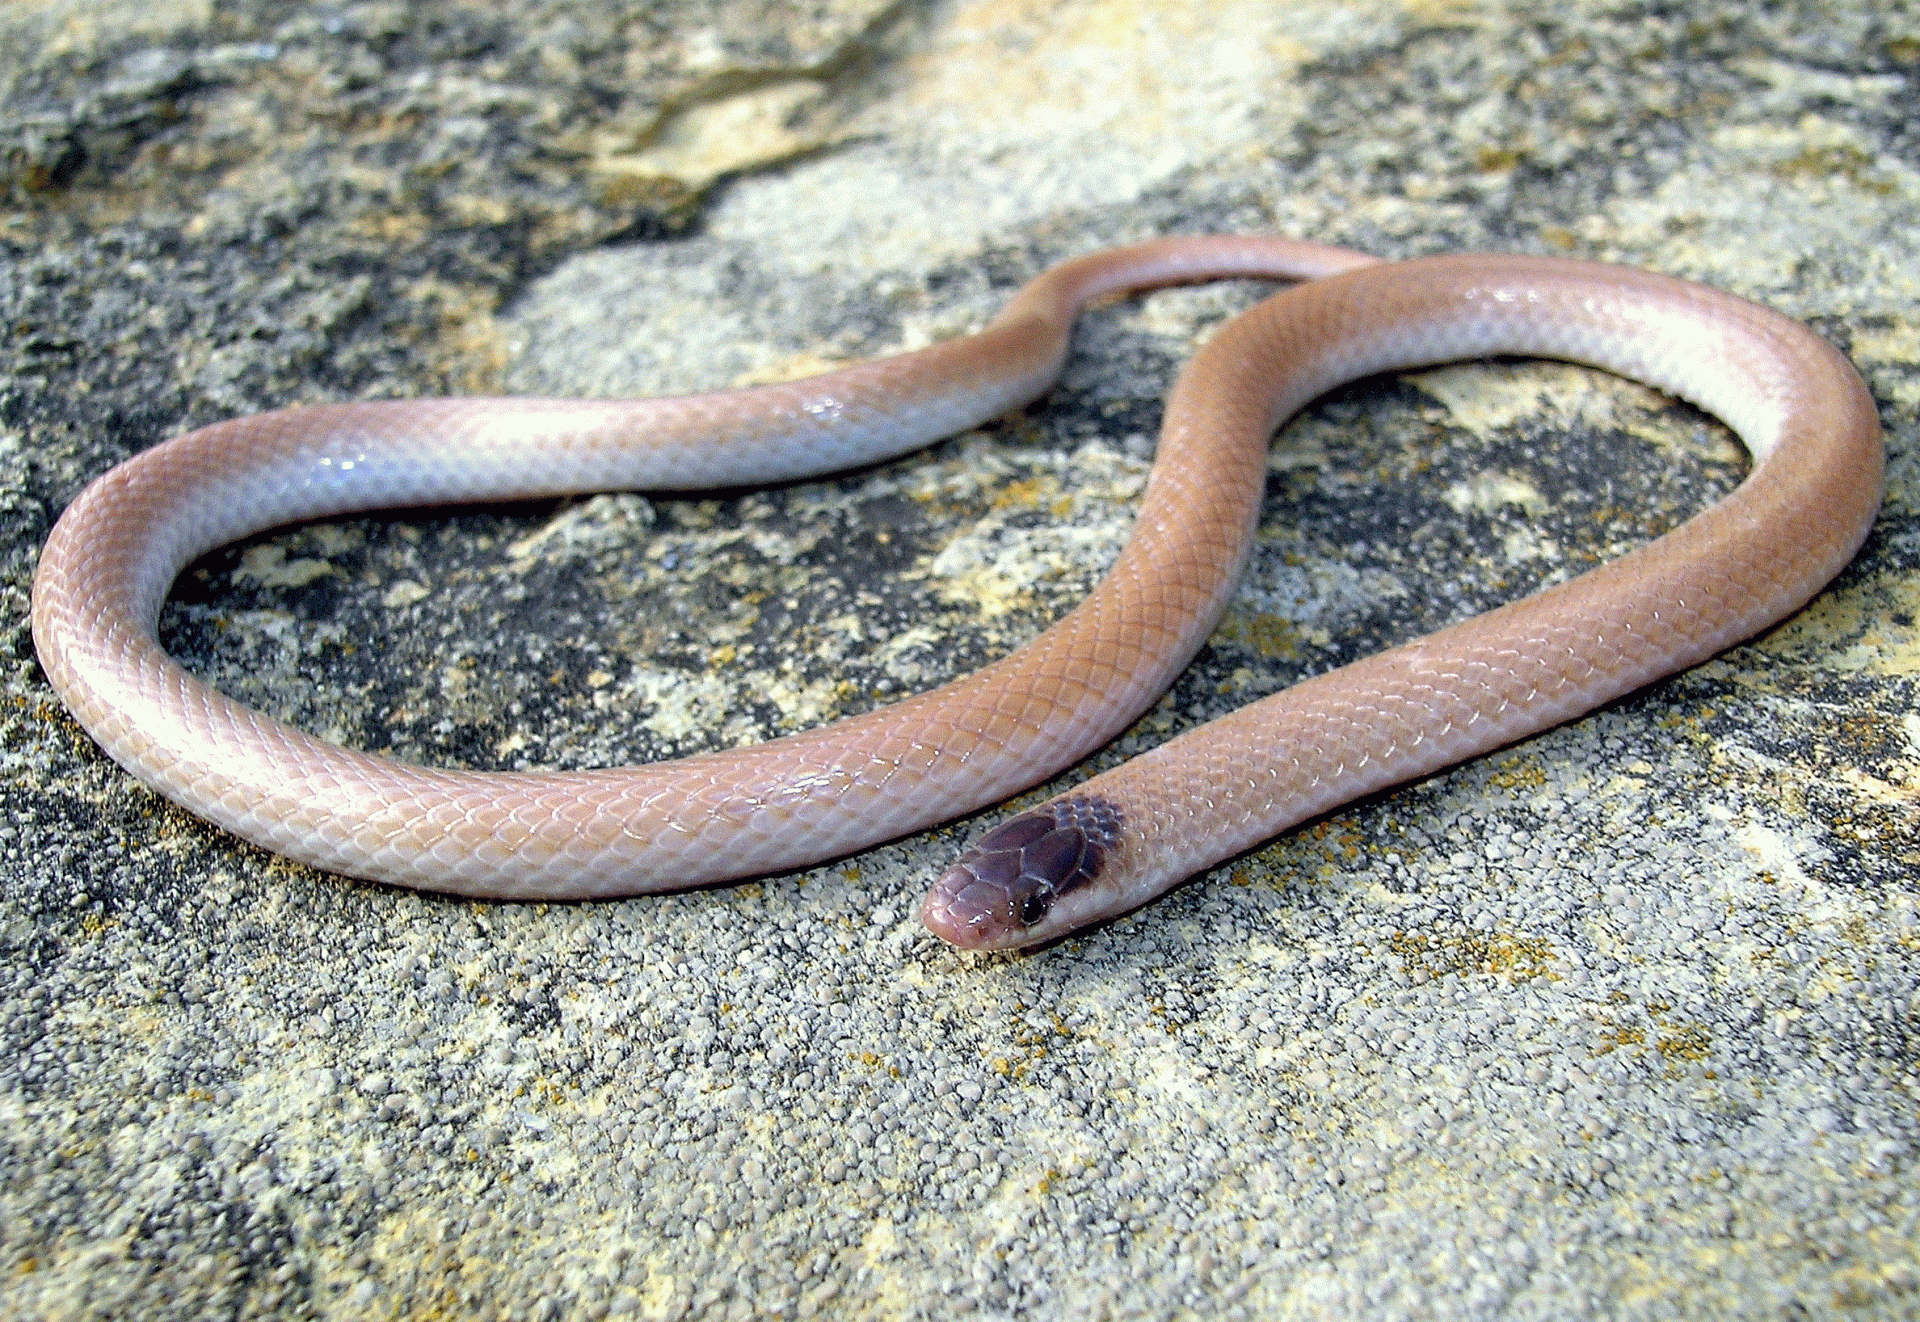 plains black-headed snake